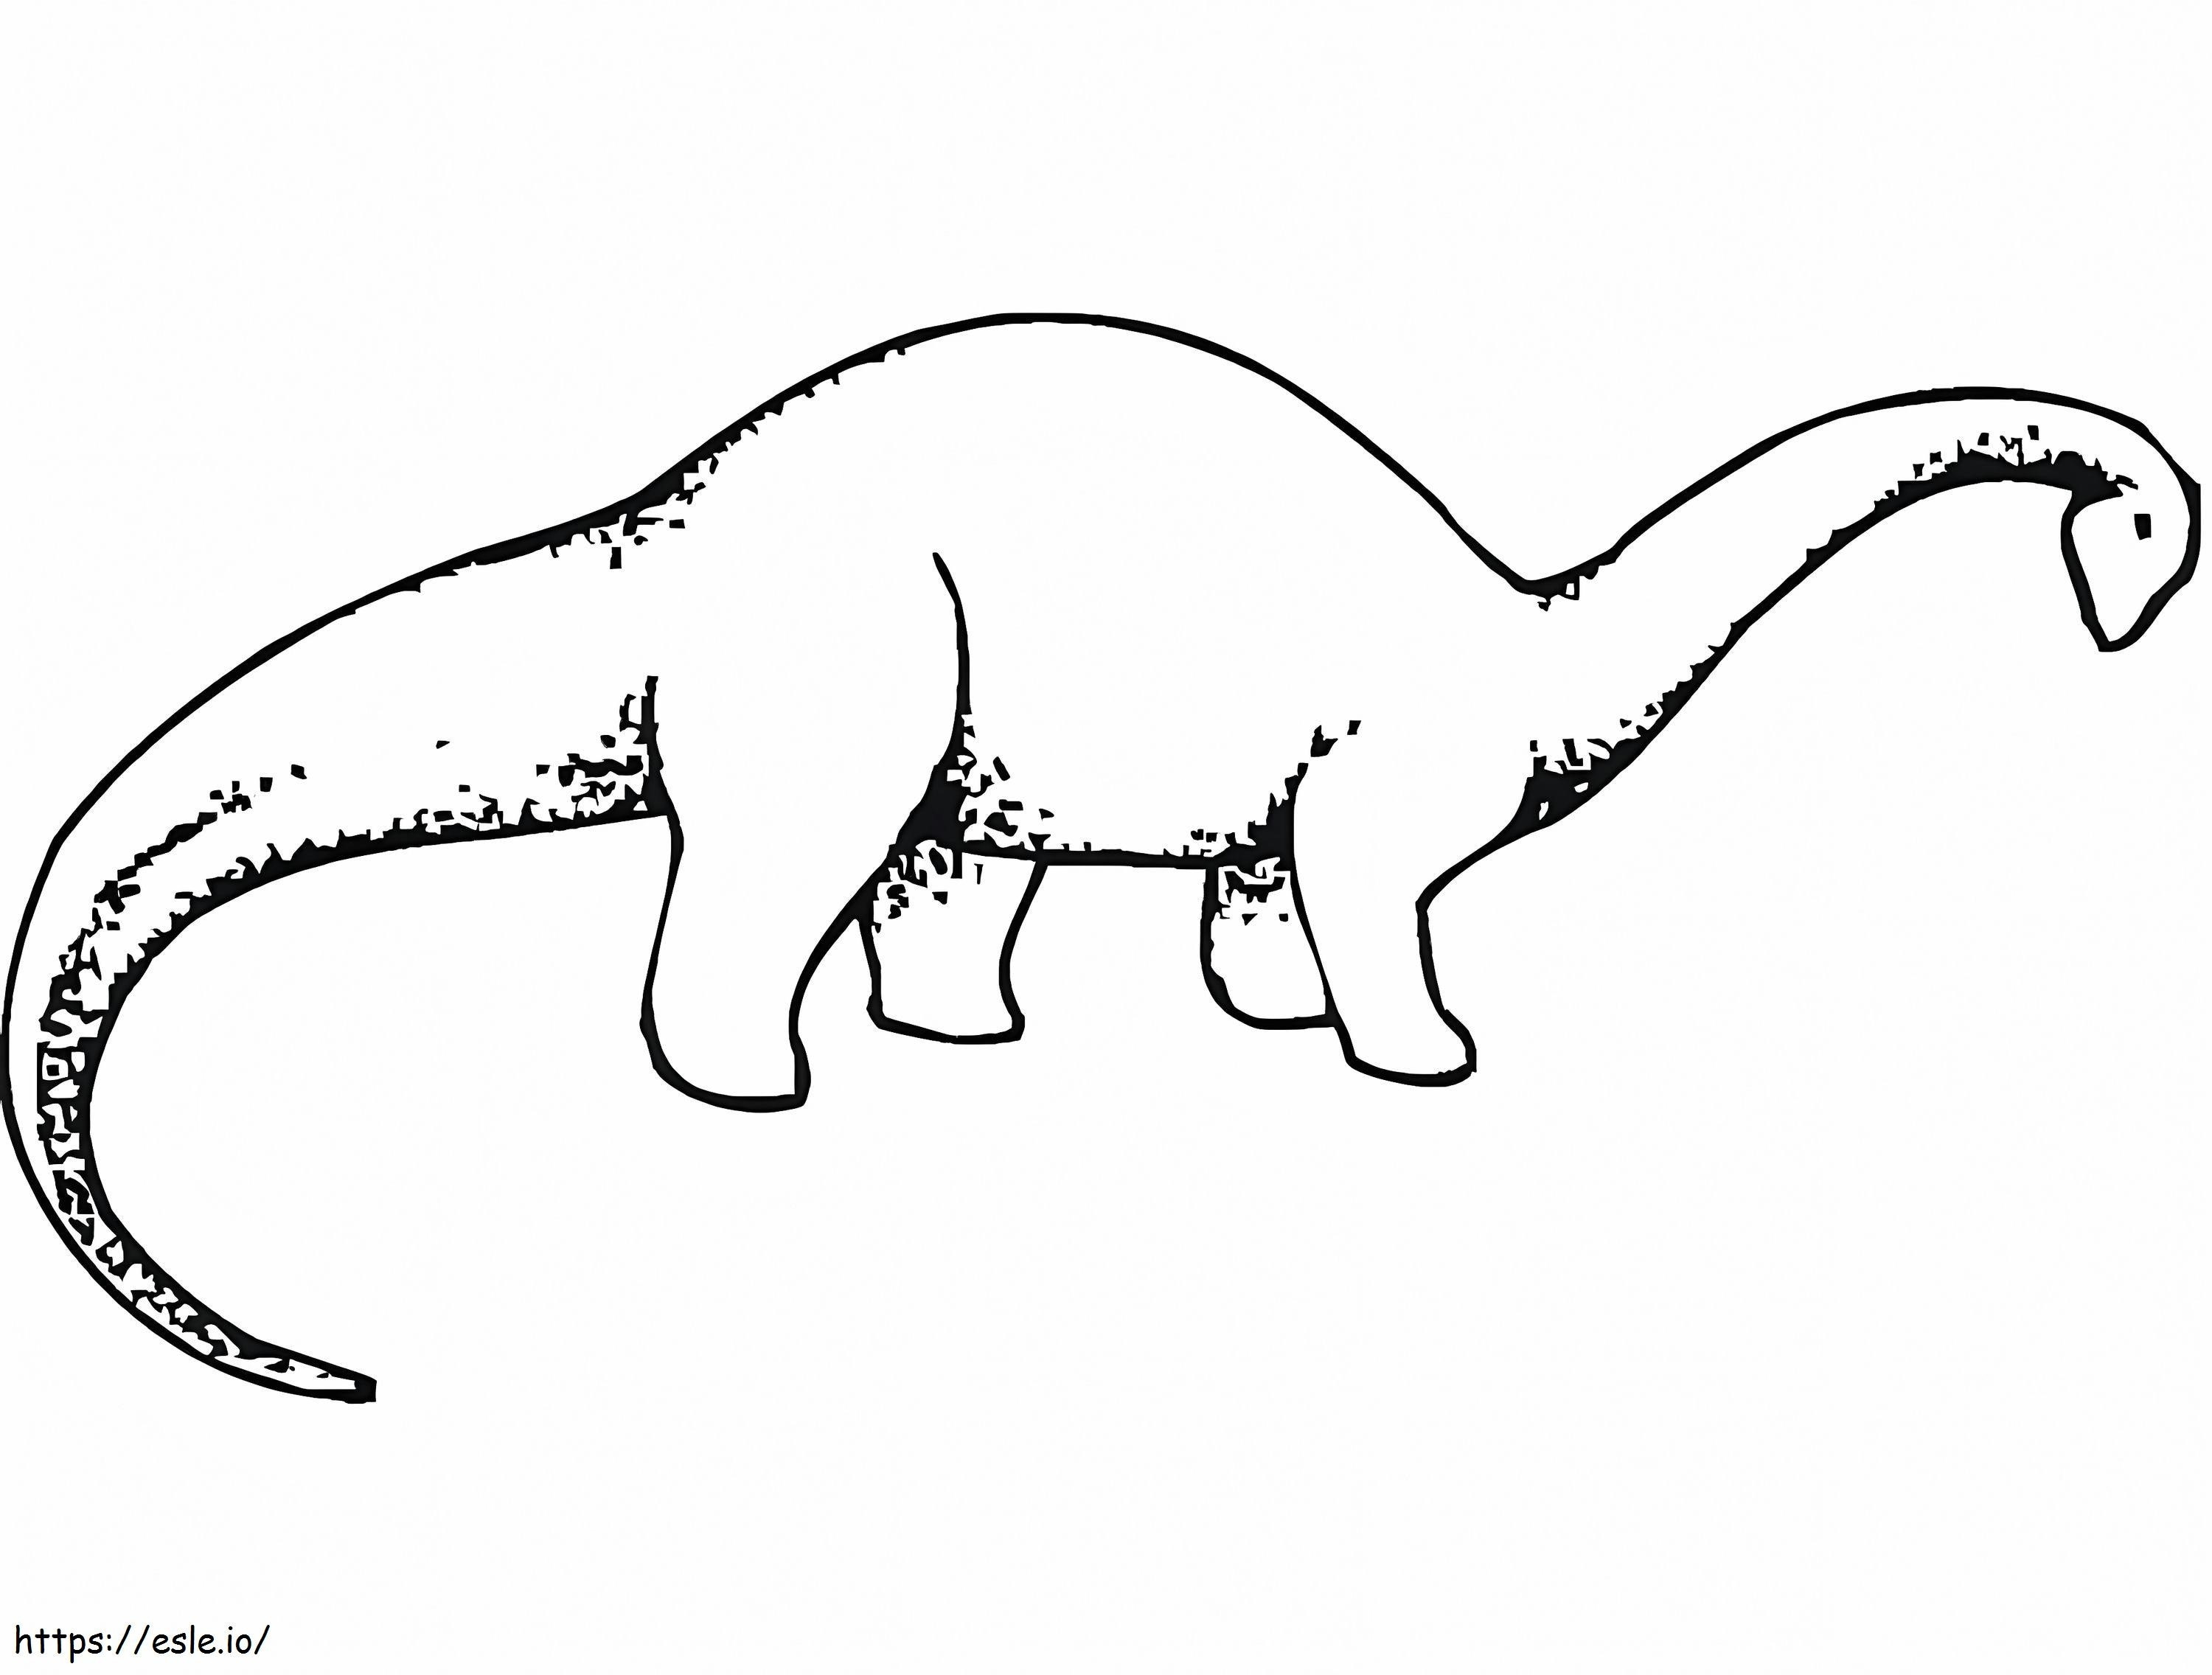 Coloriage Brachiosaure 1 à imprimer dessin